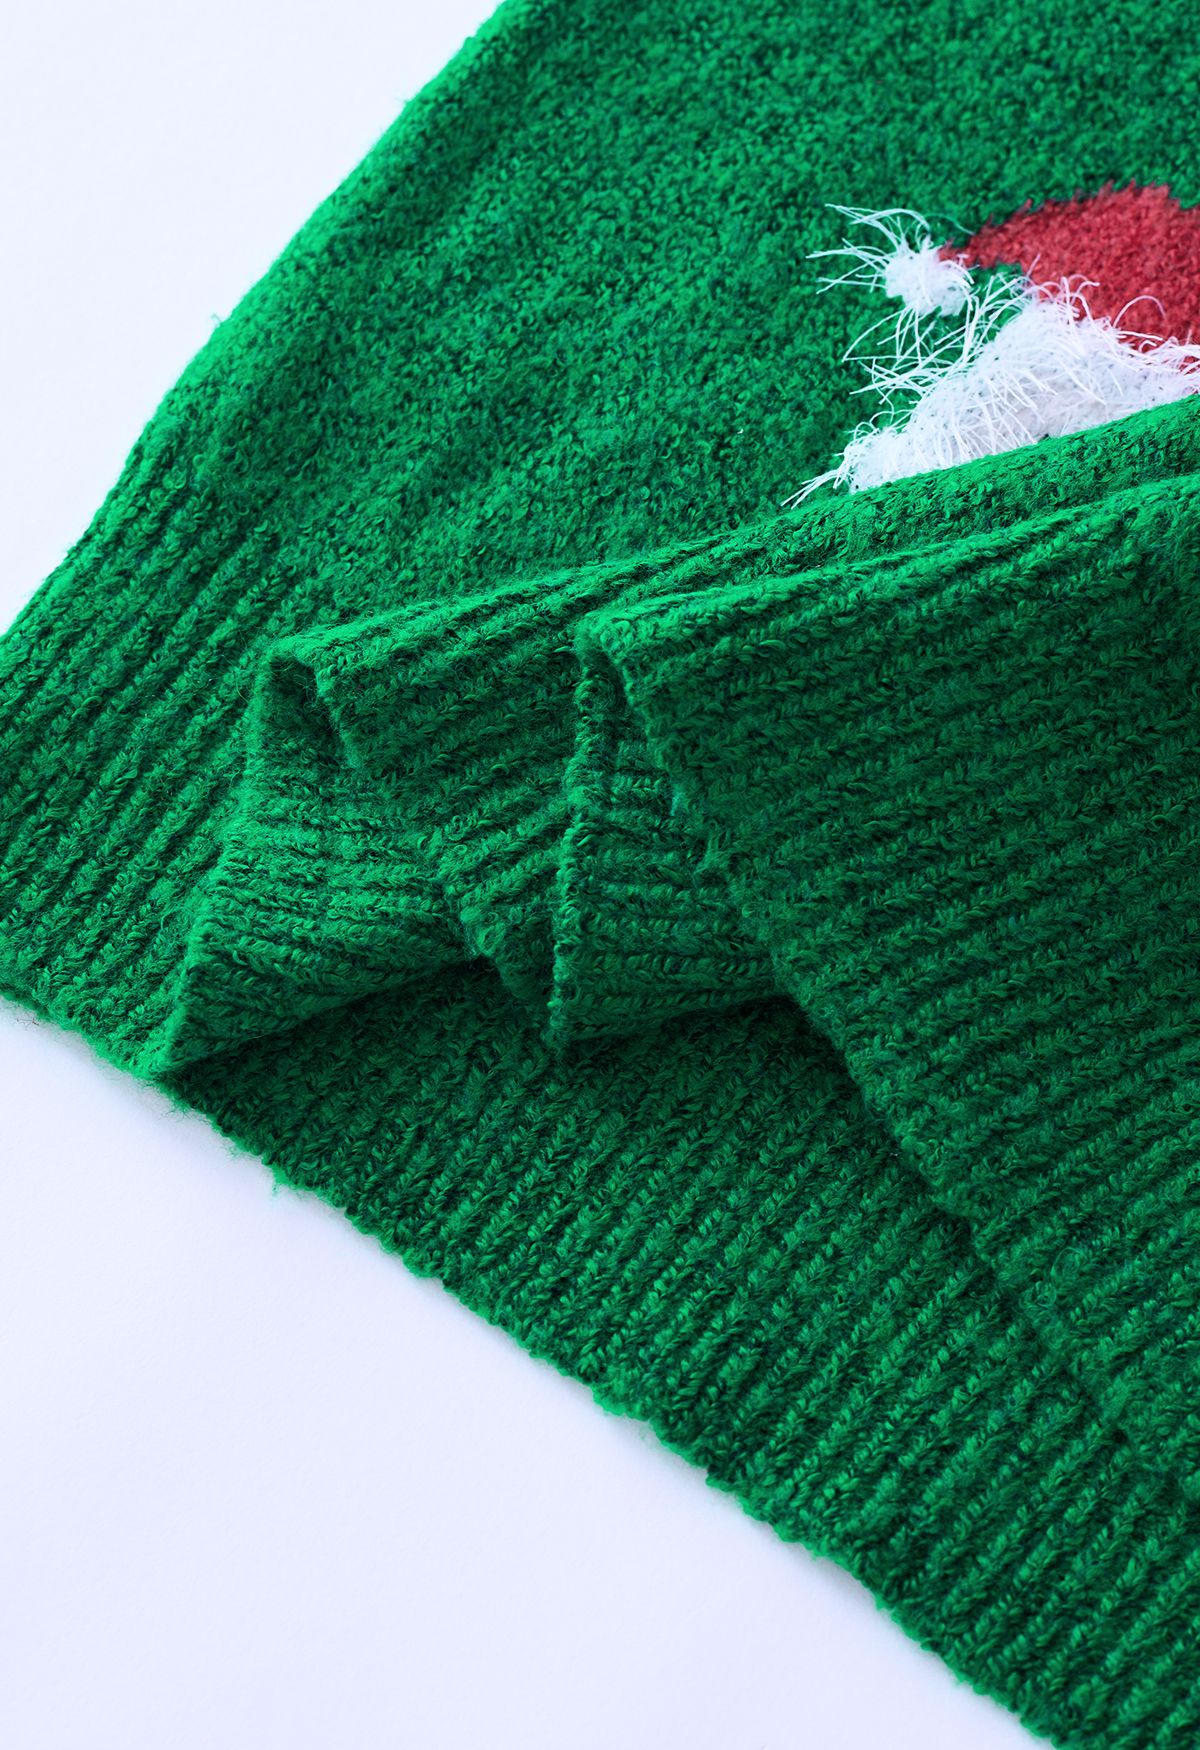 Top in maglia sfocata di Babbo Natale in verde